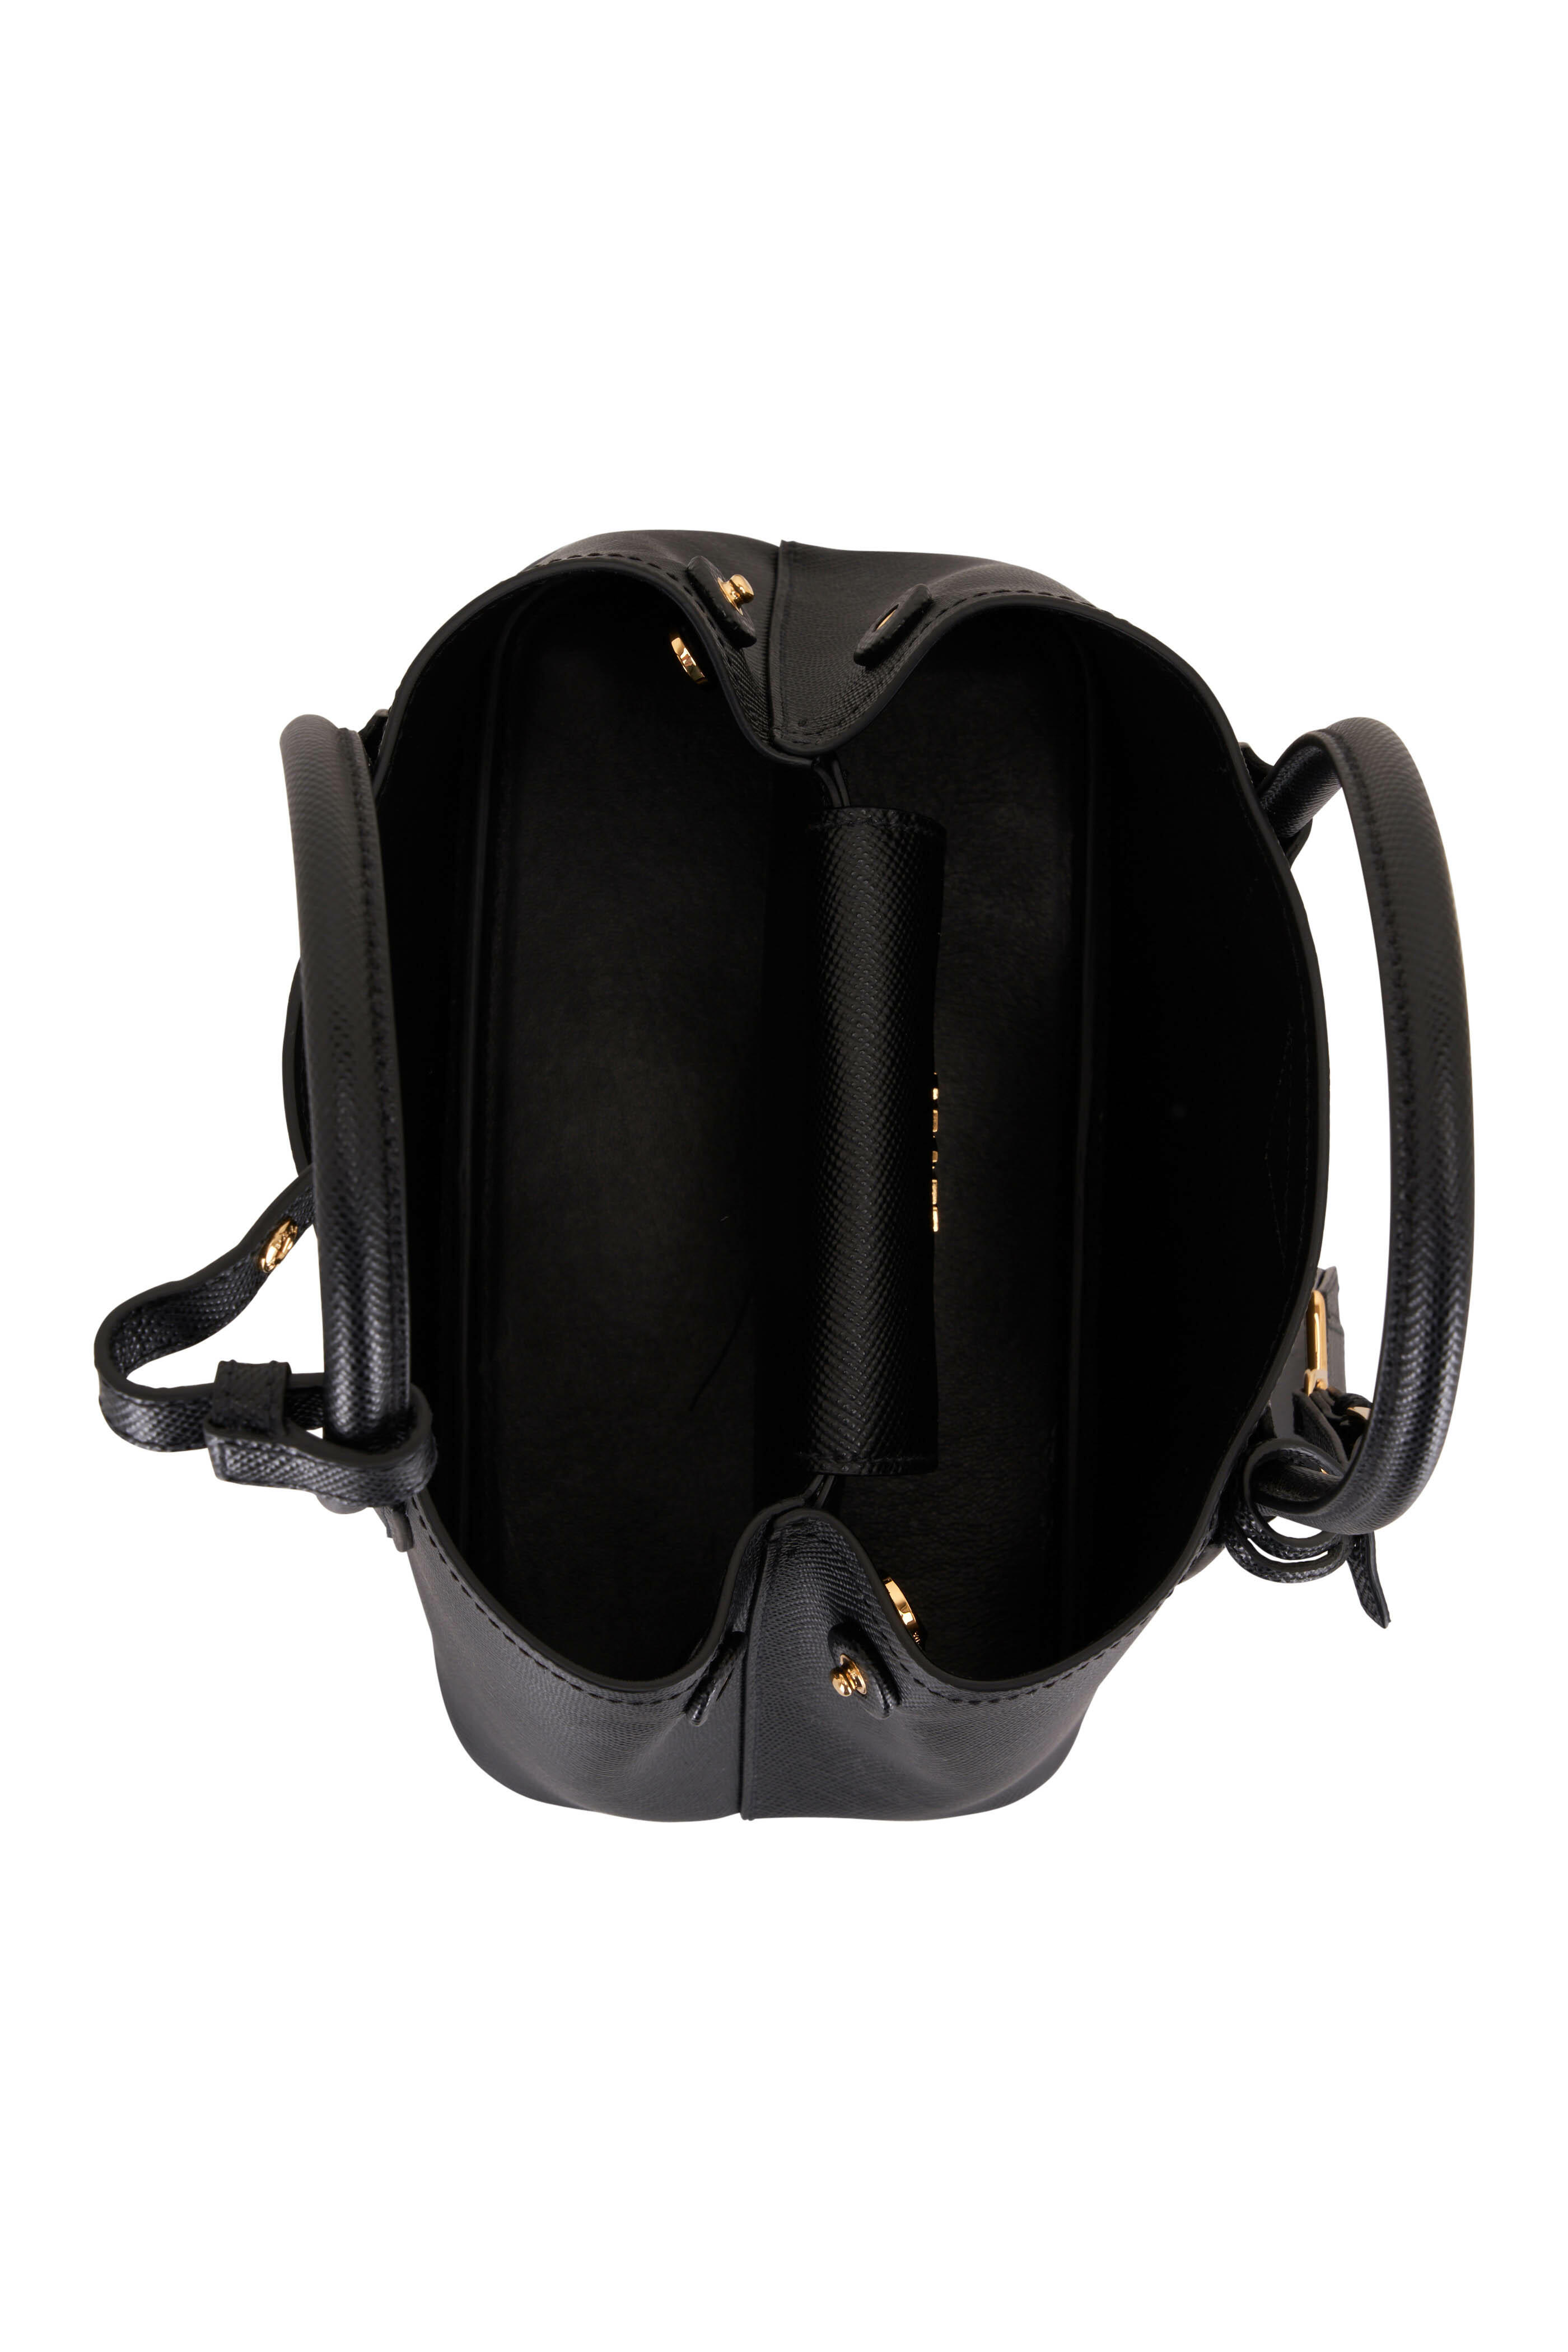 REVIEW] Prada Small Saffiano Leather Double Prada Bag - BF : r